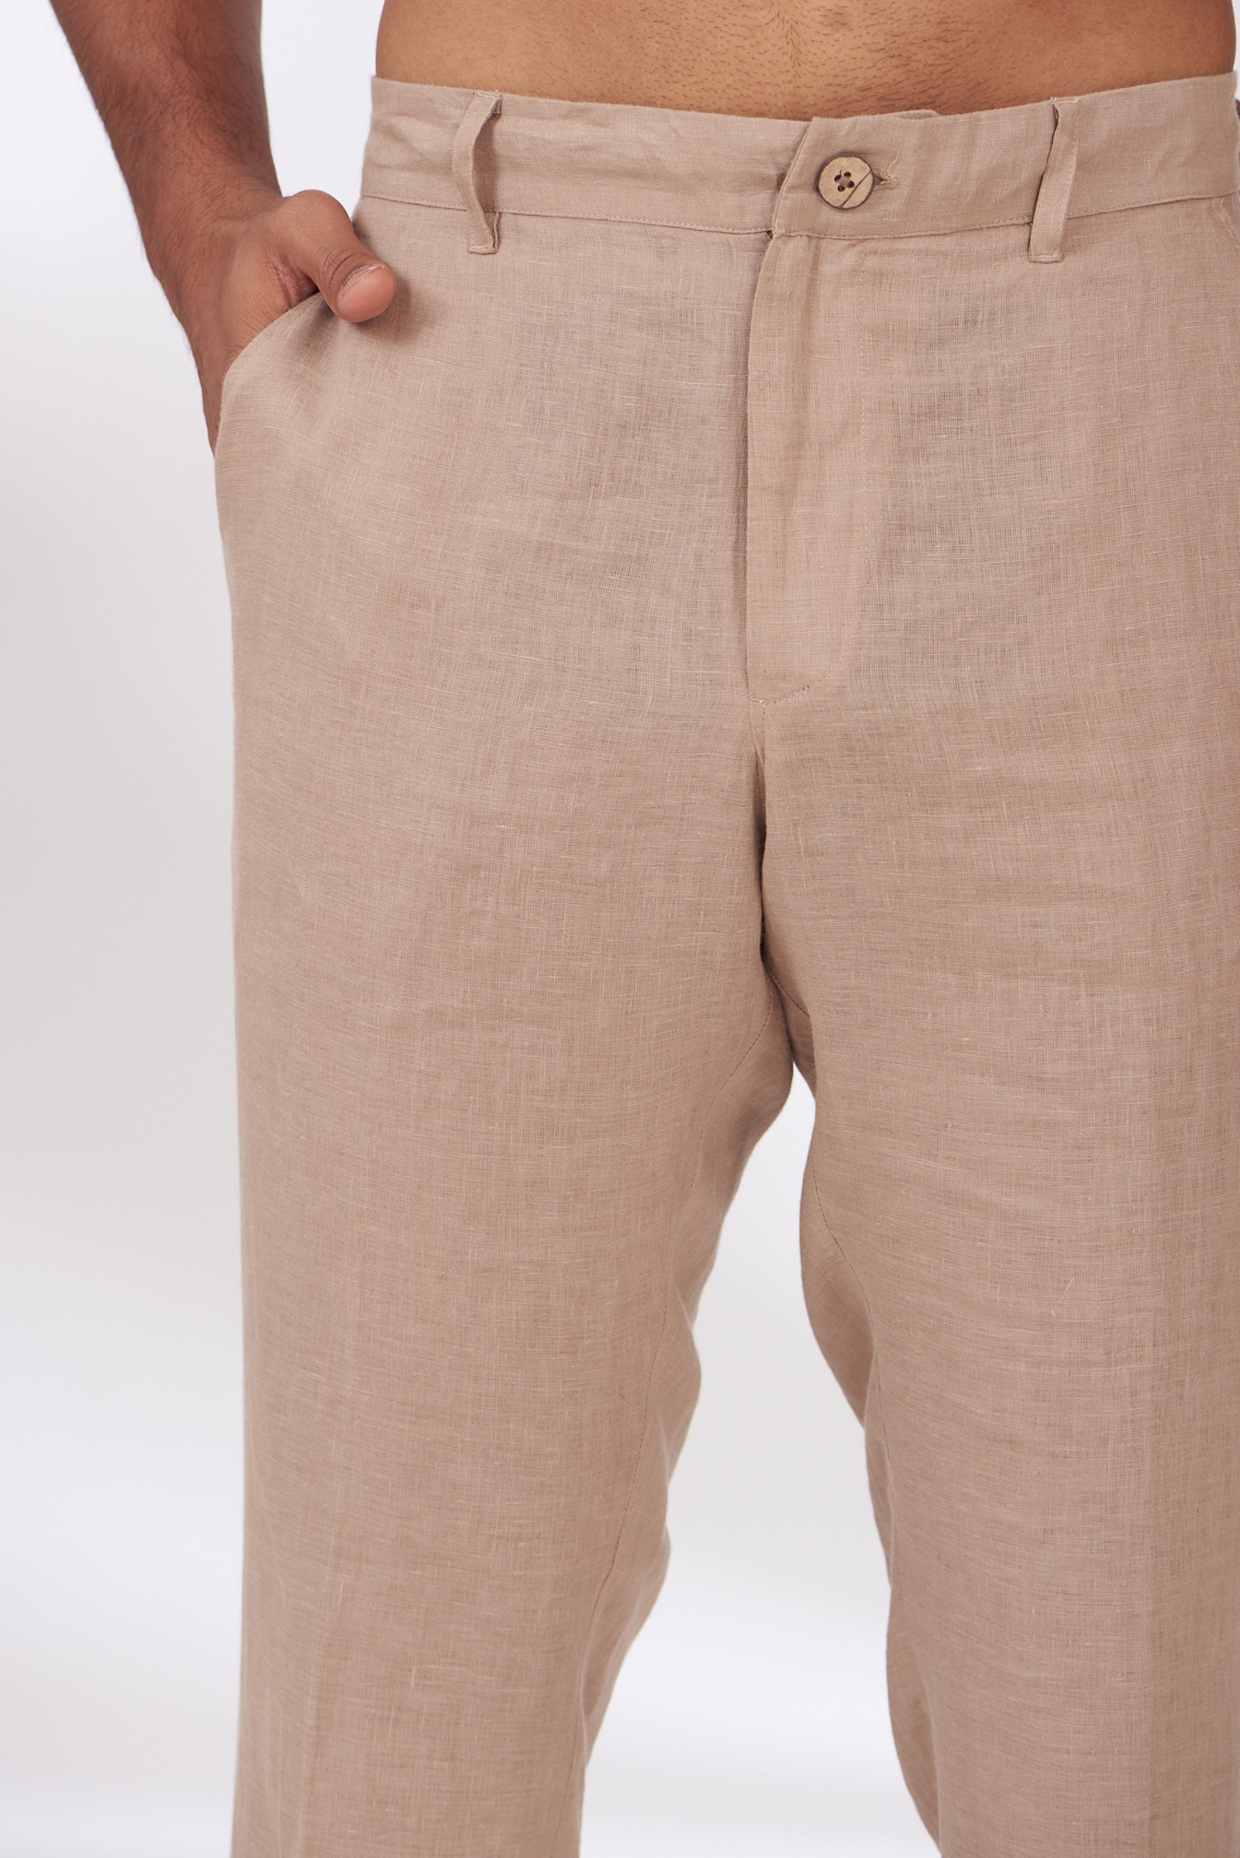 Plus Size Linen Pants For Women Women Fashion Elastic Waist Casual Pure  Color Straight Leg Cotton Linen Cropped Pocket Trousers Khaki S -  Walmart.com